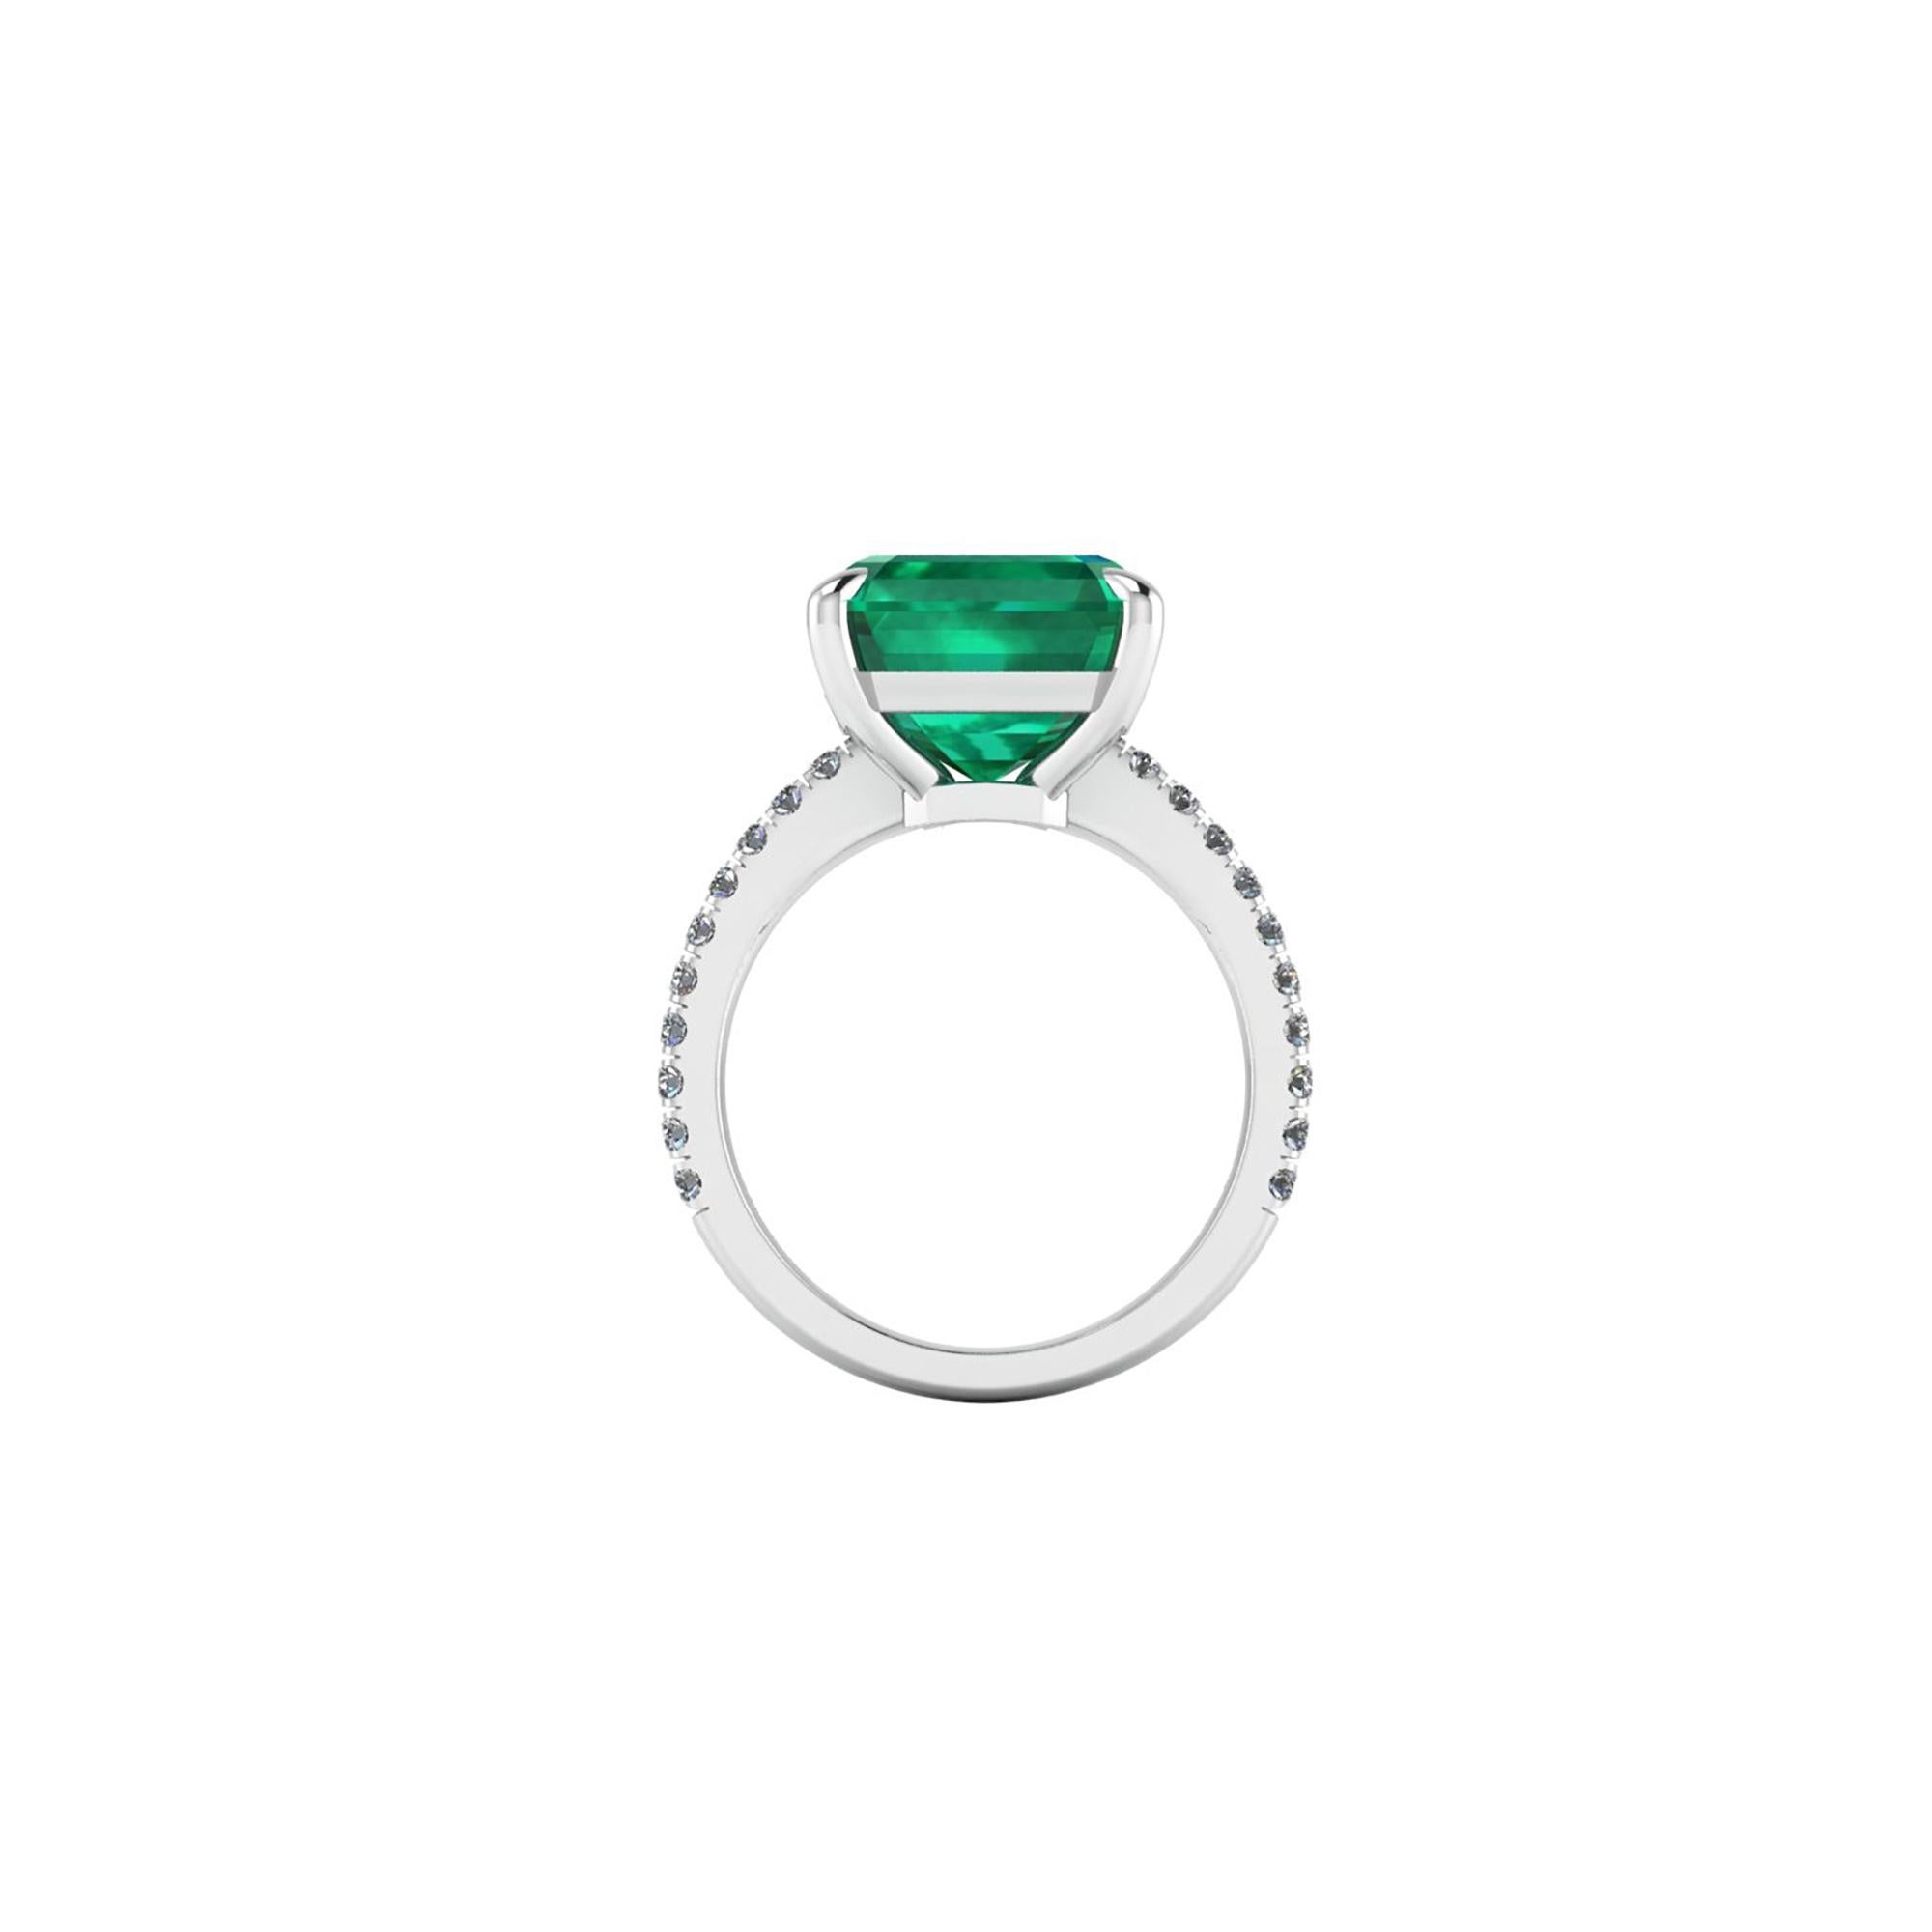 GRS Certified 6.95 Karat kolumbianischen Smaragd geschnitten Smaragd, sehr hohe Qualität Farbe,  verschönert durch ein Pflaster aus leuchtenden Diamanten von etwa  Gesamtkaratgewicht von 0,32 Karat, eingefasst in einen handgefertigten Ring aus